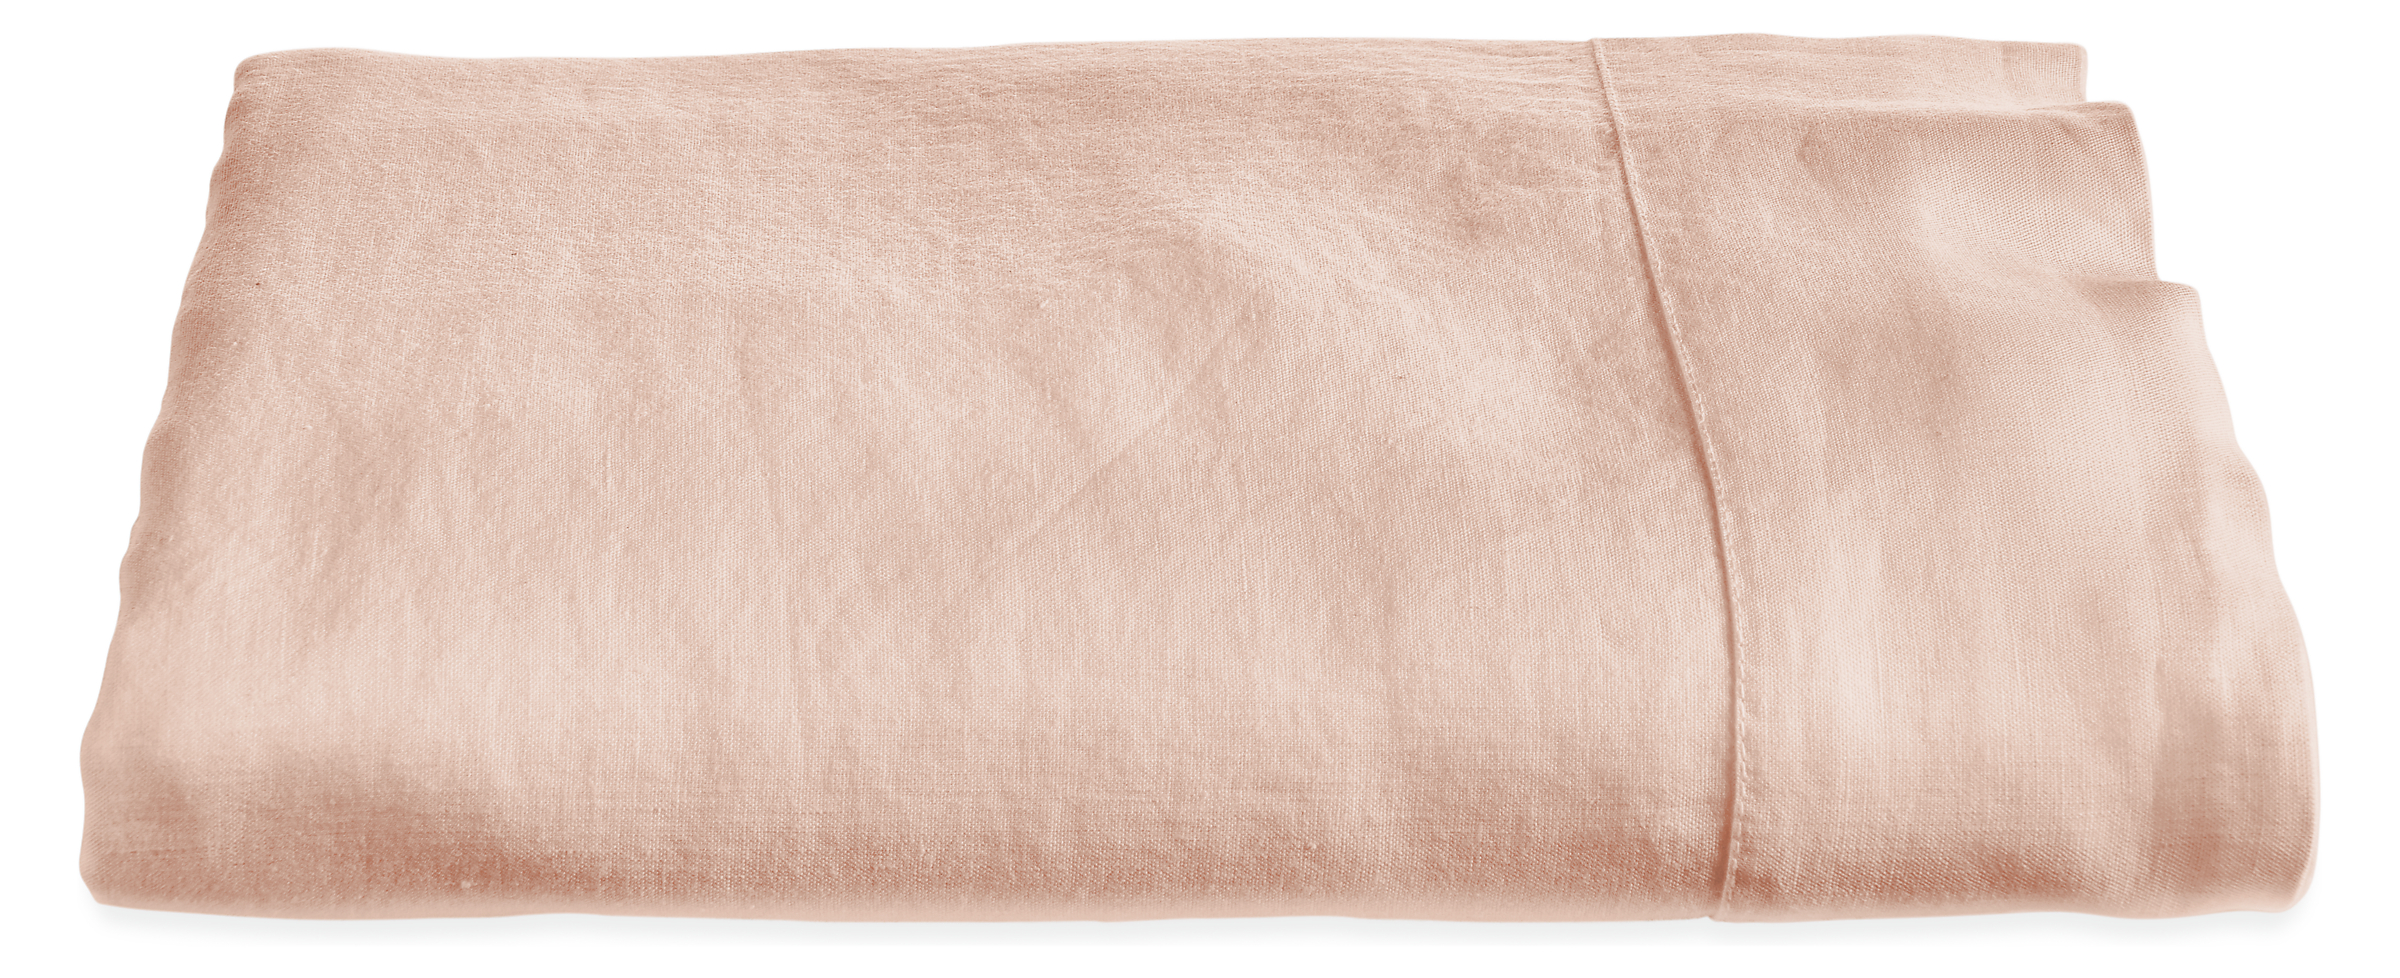 Relaxed Linen Queen Flat Sheet